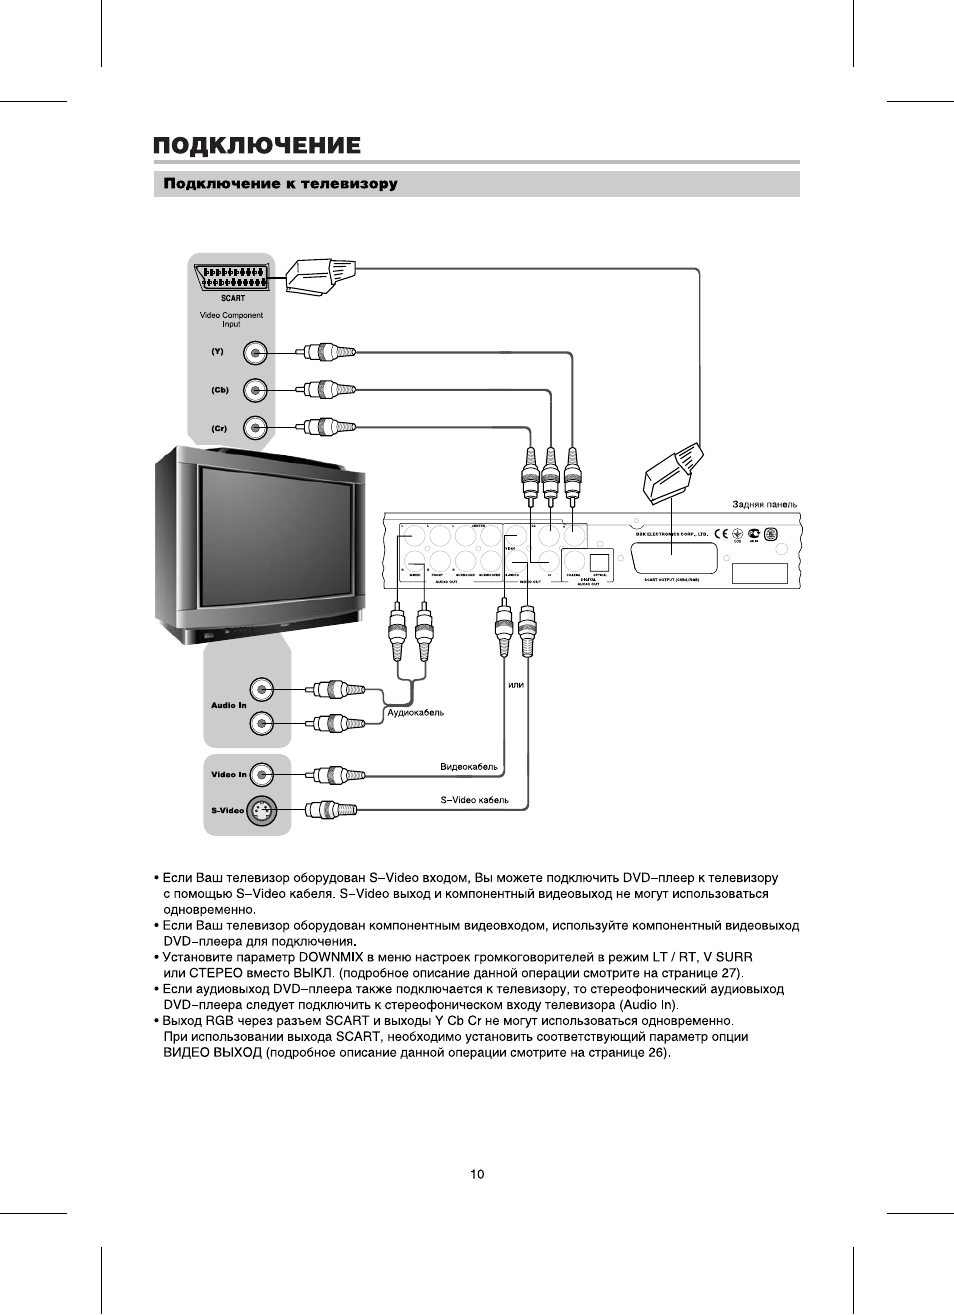 Как подключить двд к телевизору - инструкция тарифкин.ру